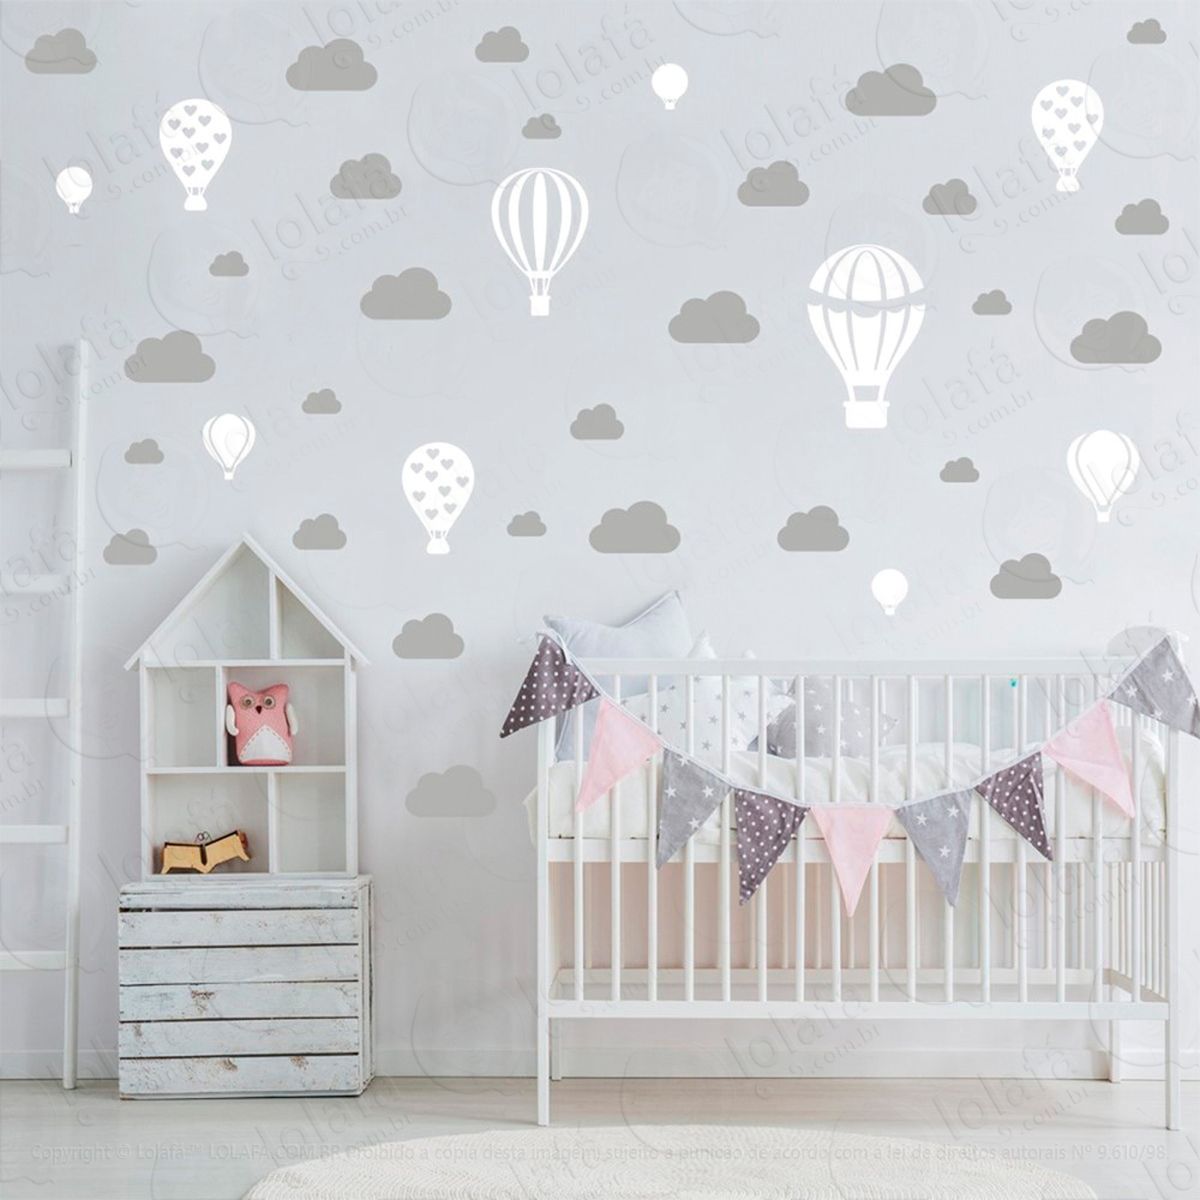 adesivos balões e nuvens 42 peças adesivos para quarto de bebê infantil - mod:946